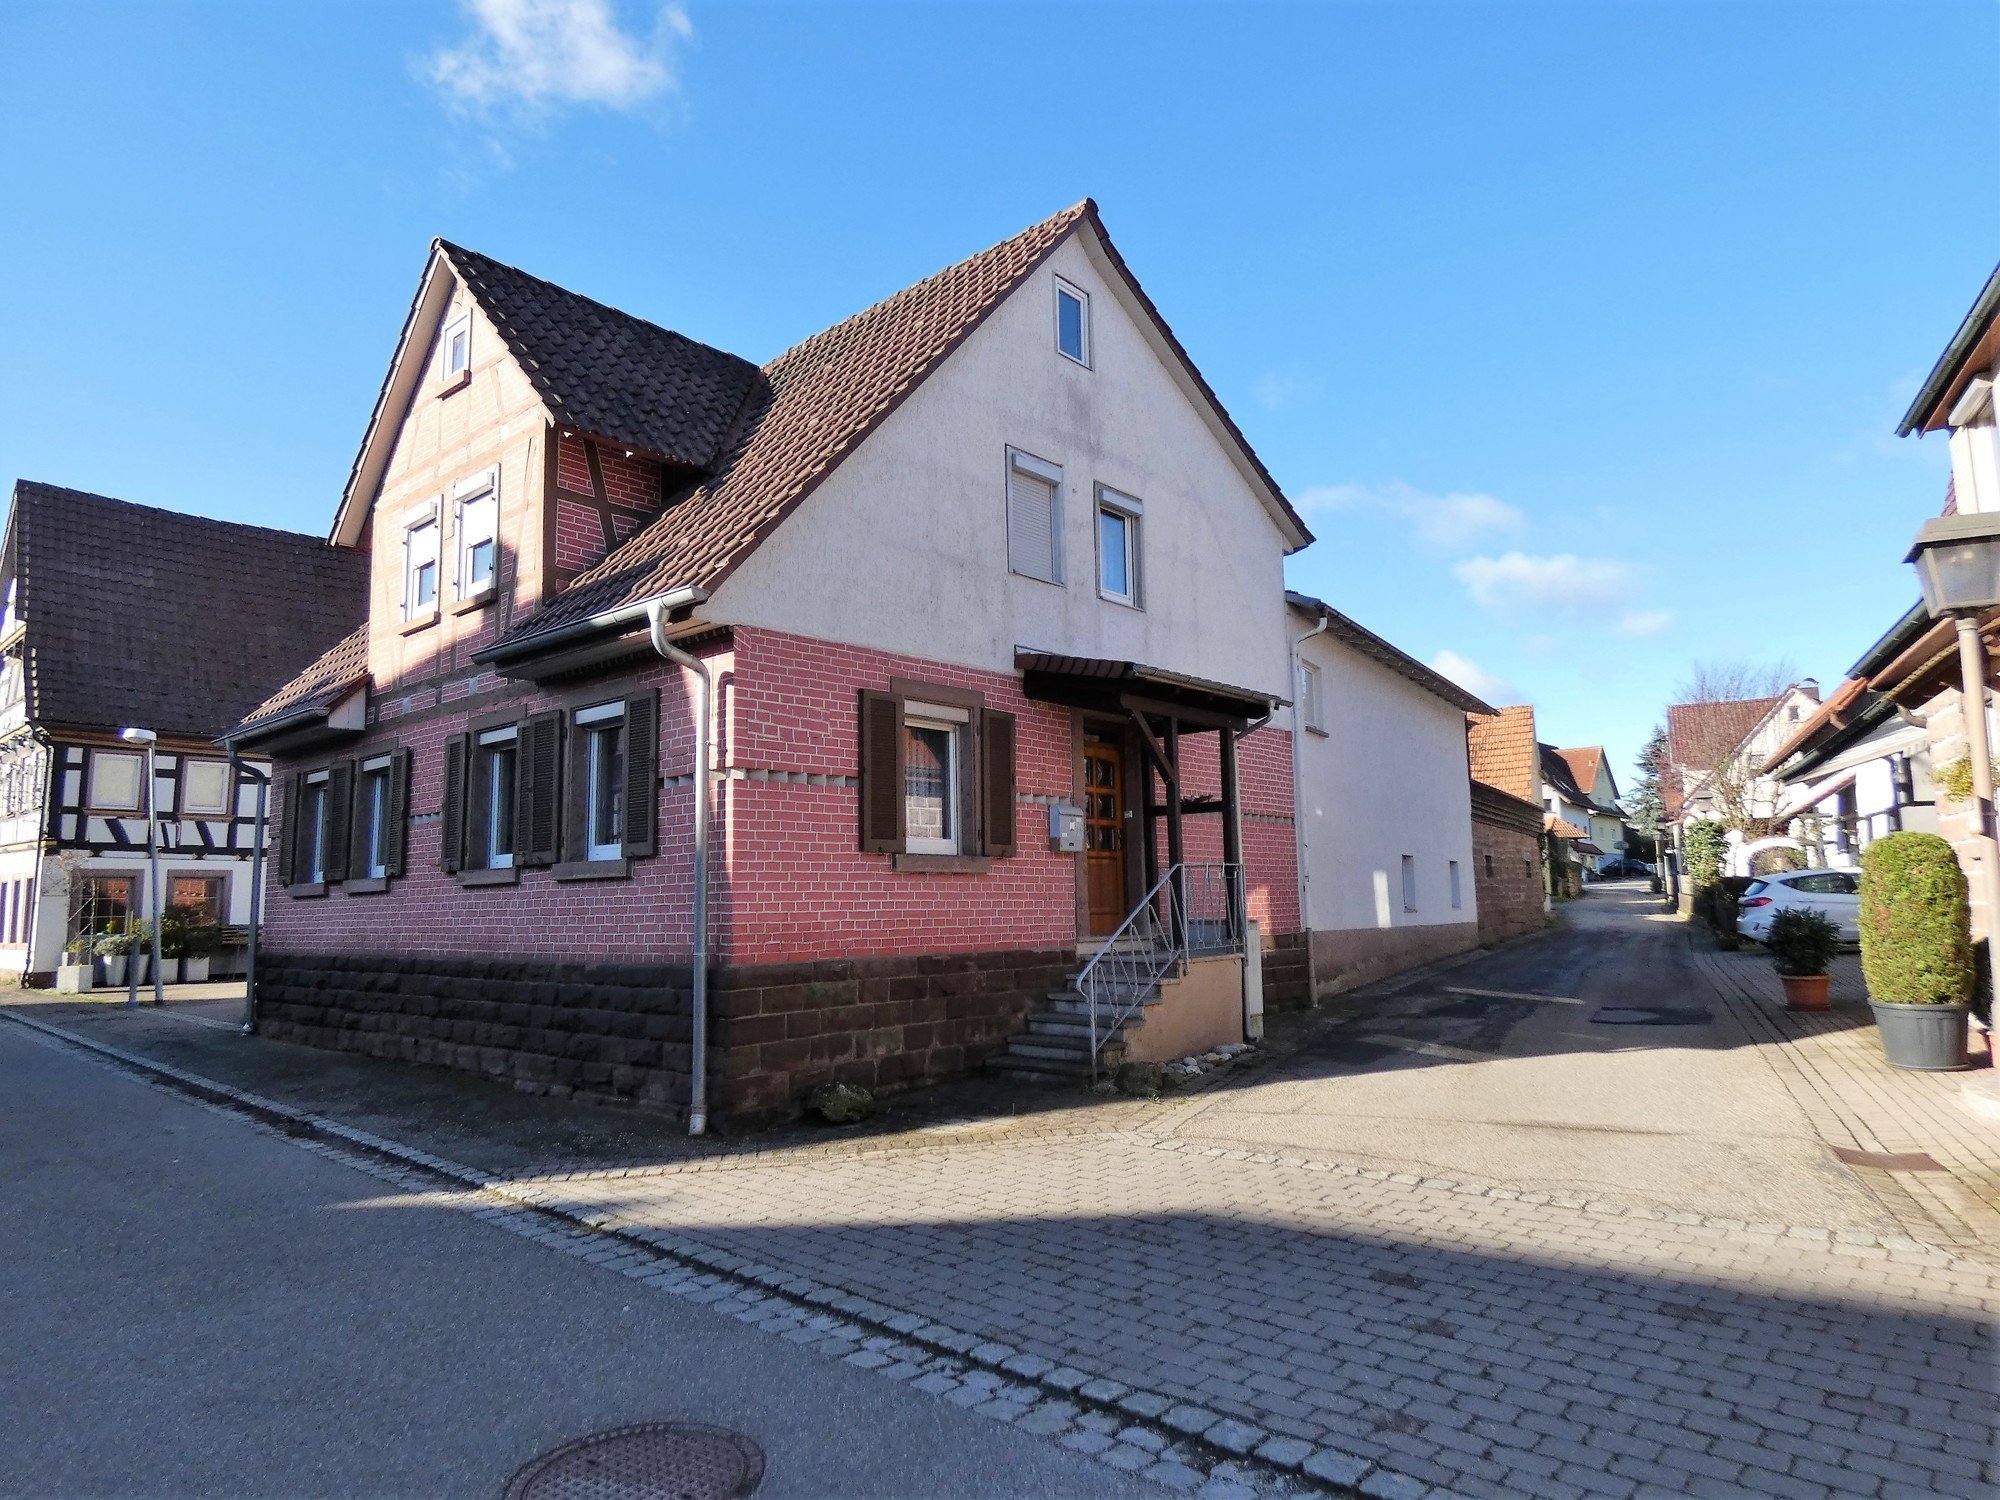 HUST Immobilien GmbH & Co. KG - Immobilienangebot - Maulbronn - Alle - Dieses gemütliche 2-Familienhaus im idyllischen Zaisersweiher wurde VERKAUFT!